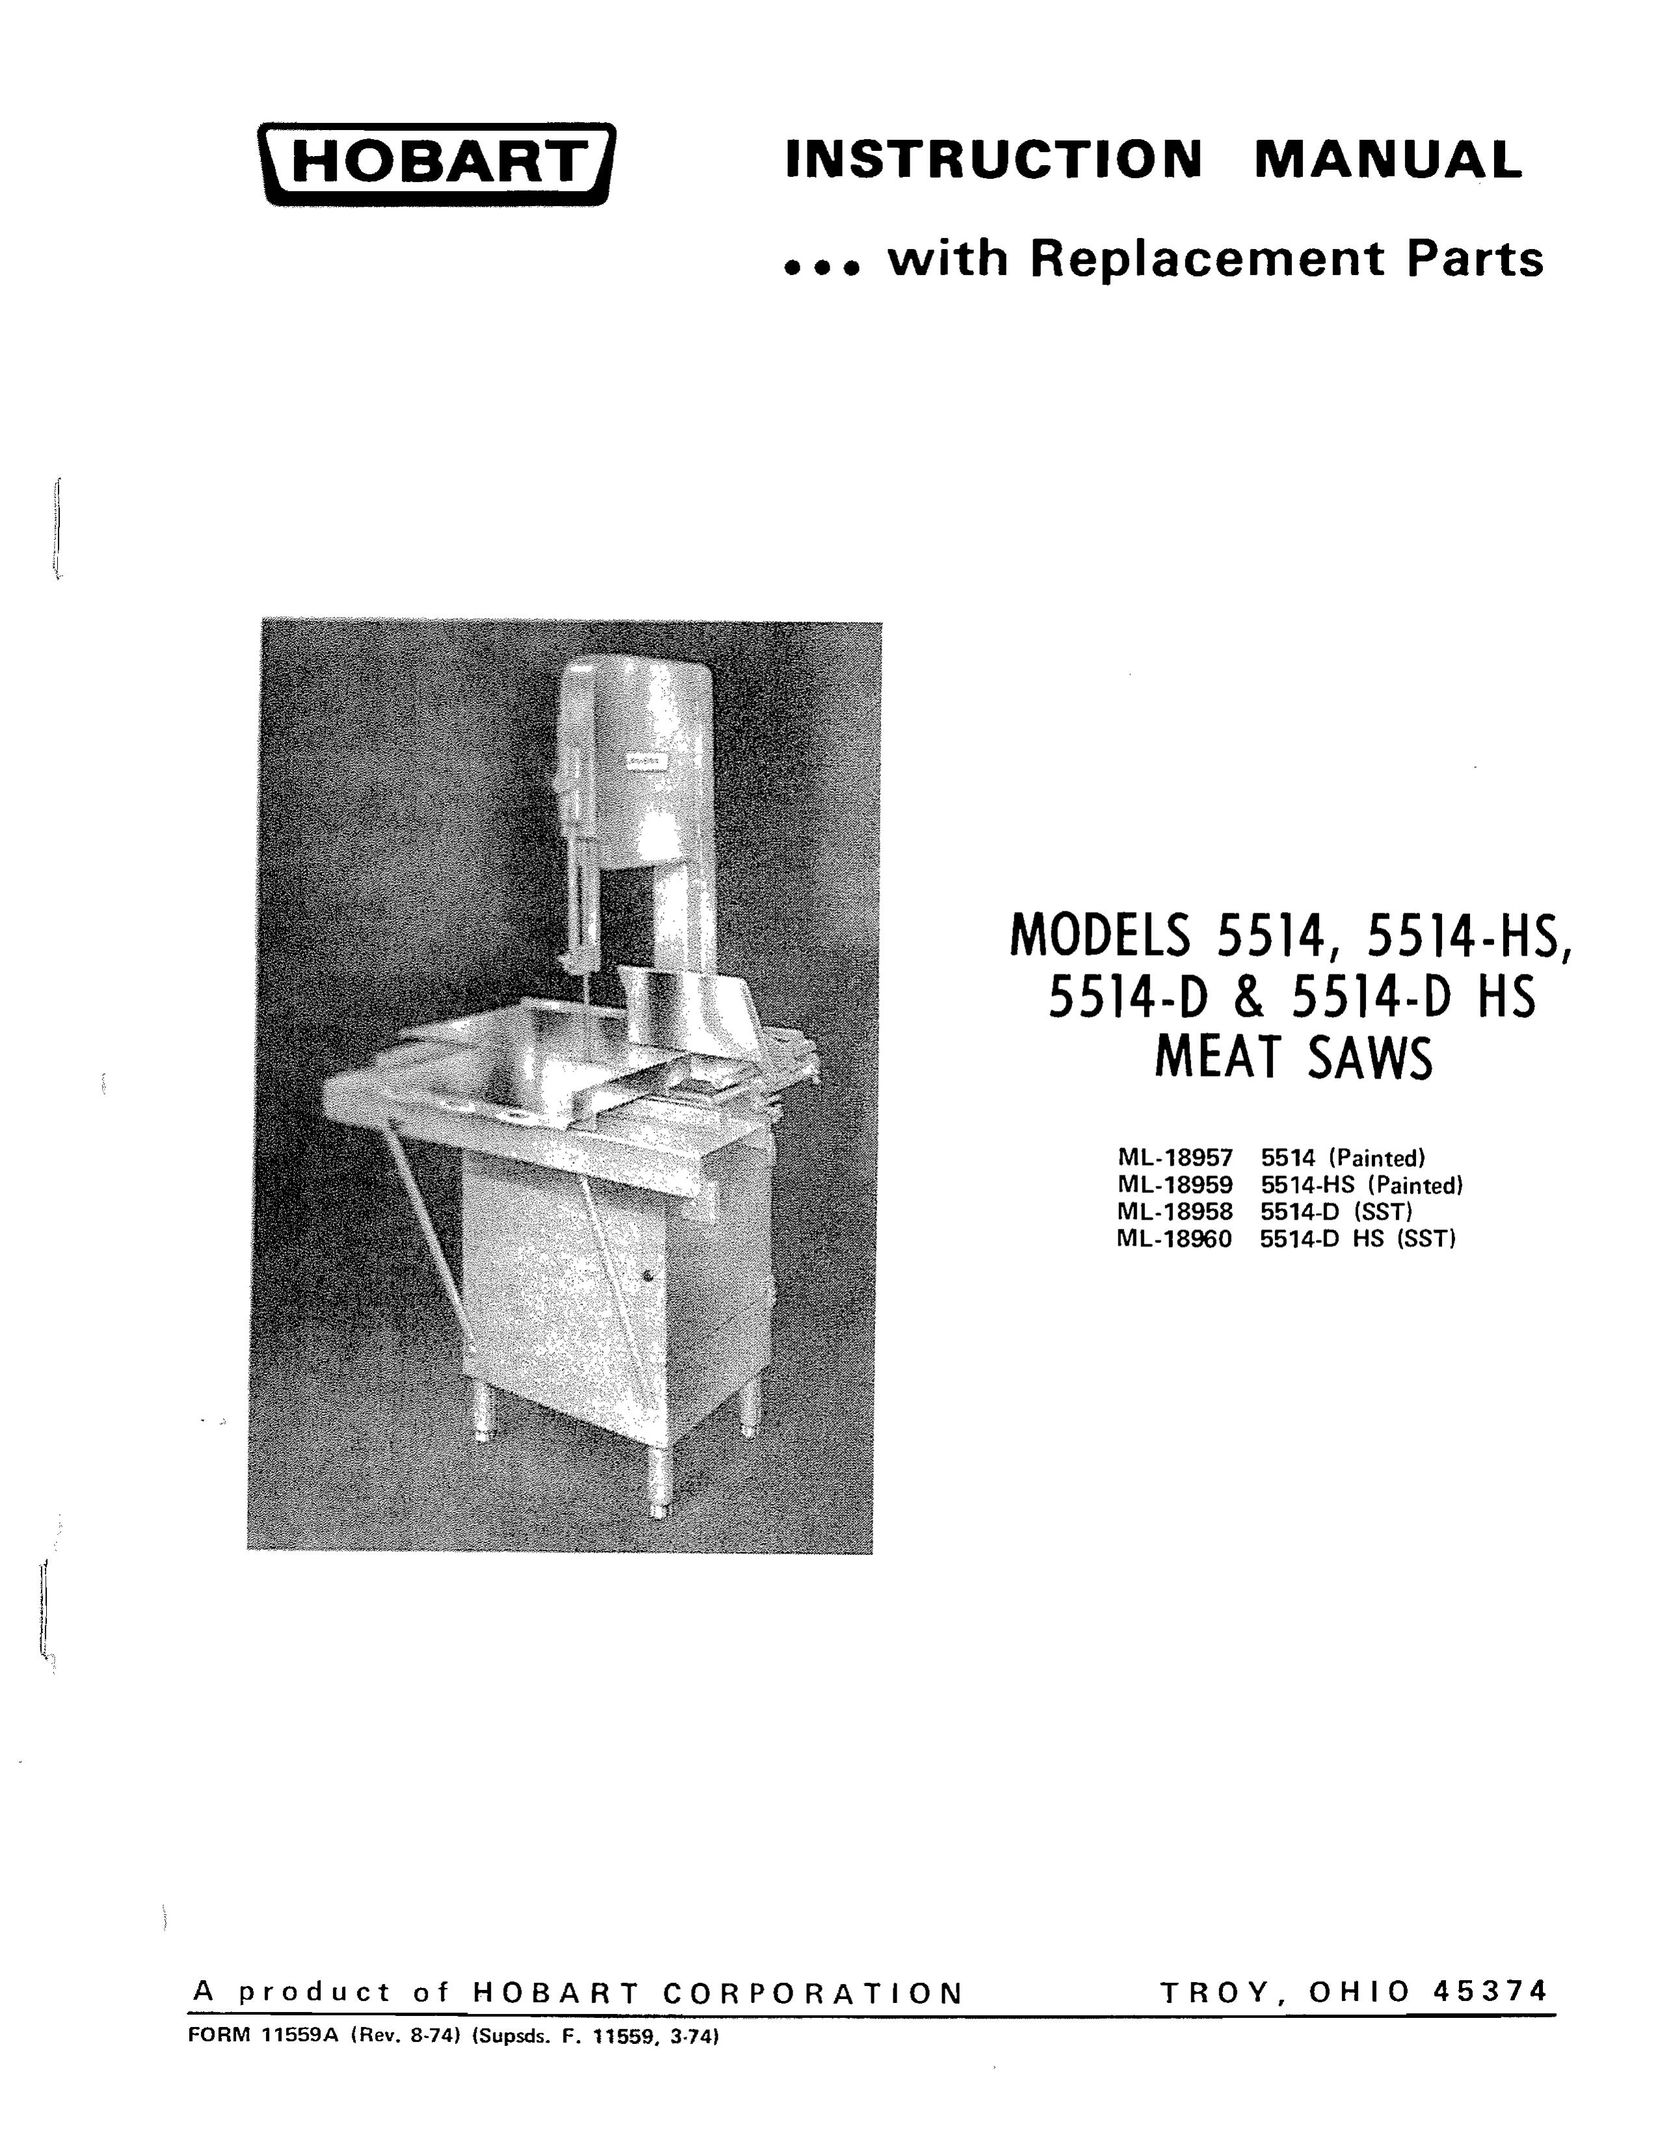 Hobart 5514-hs Plumbing Product User Manual